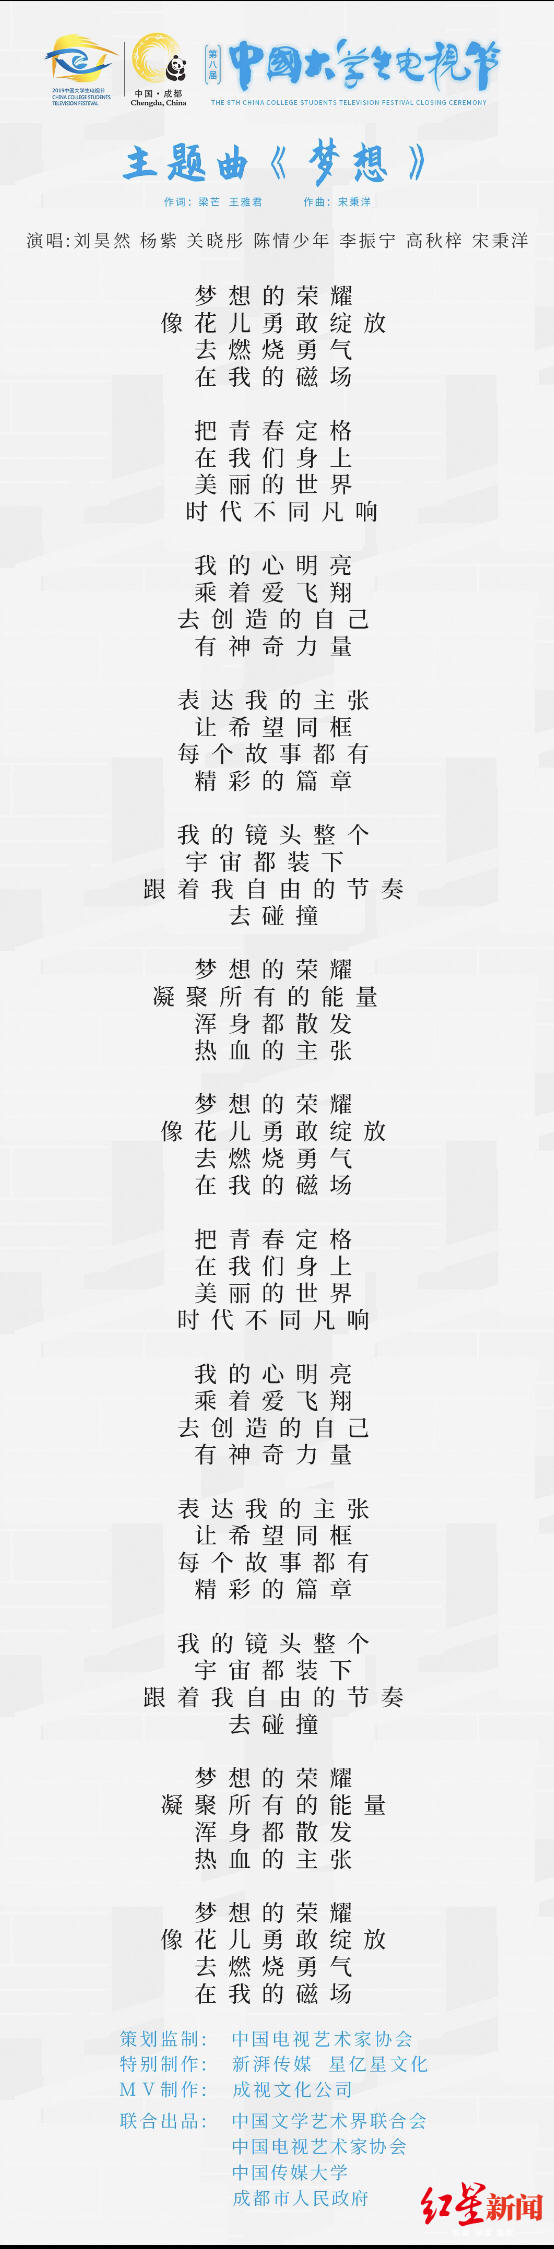 大学生电视节主题曲《梦想》上线，刘昊然、杨紫、关晓彤等献唱_青年